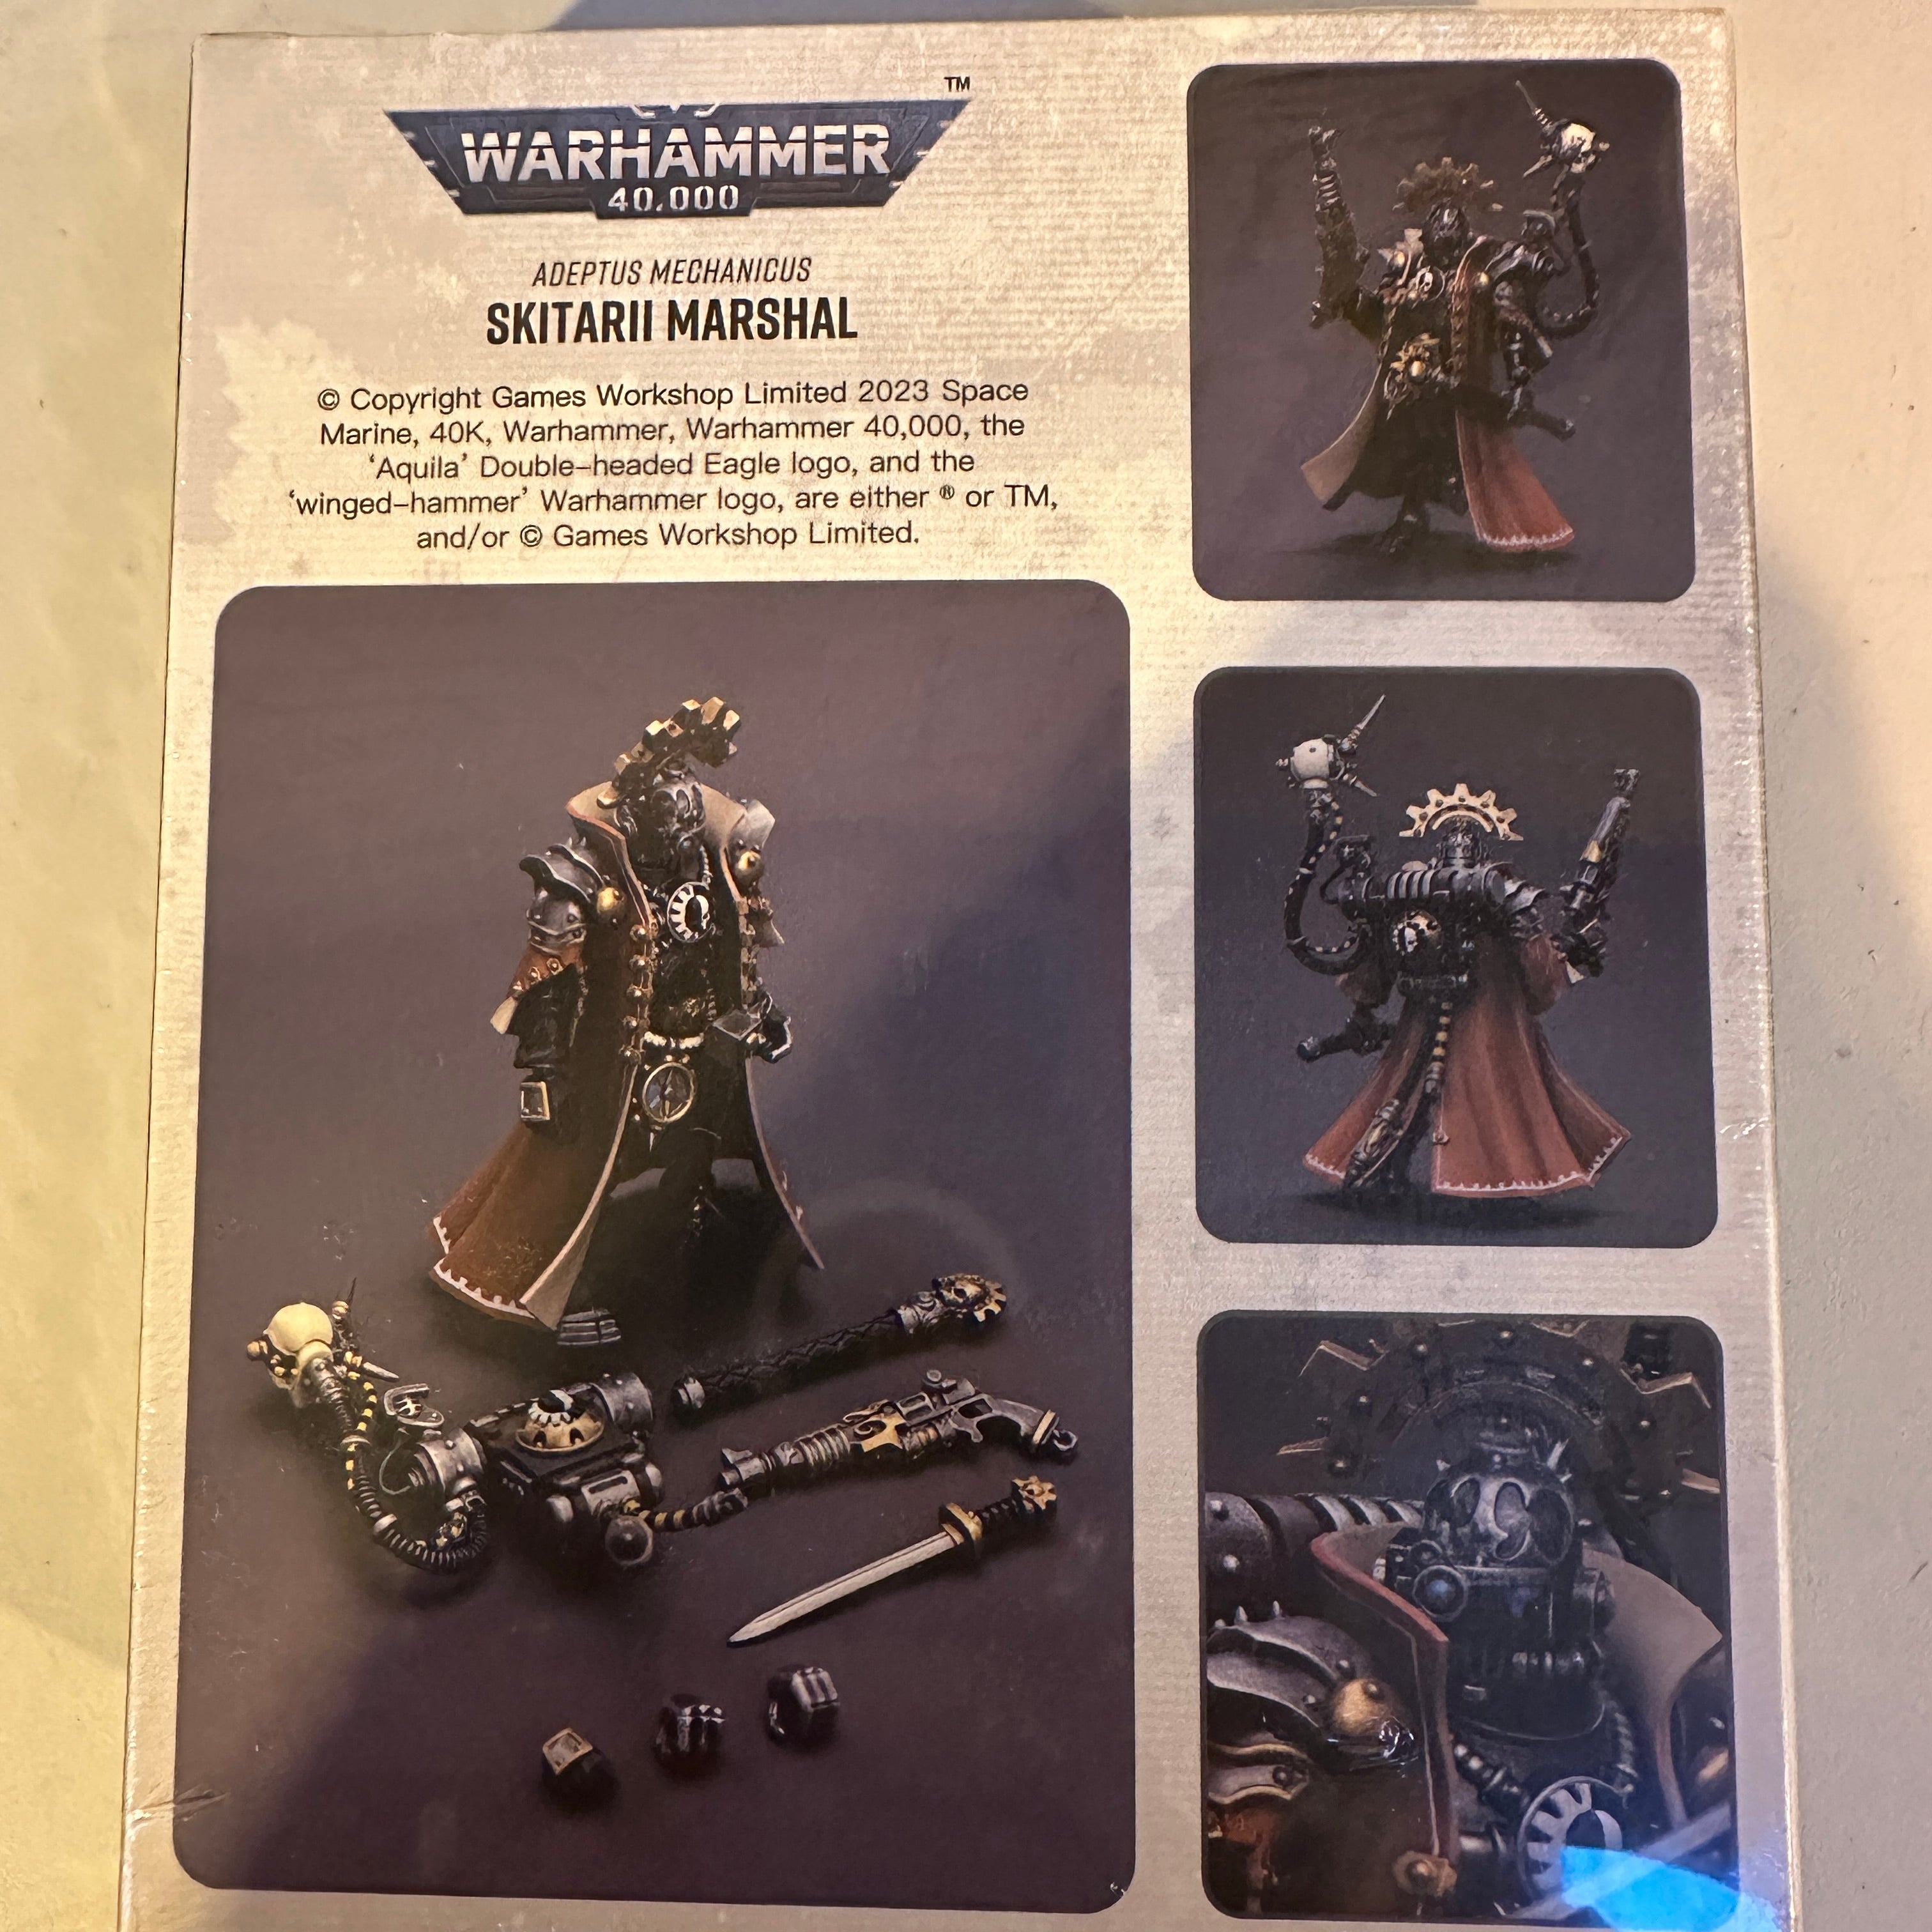 Adeptus Mechanicus Skitarii Marshal 1/18 Scale, Warhammer 40K